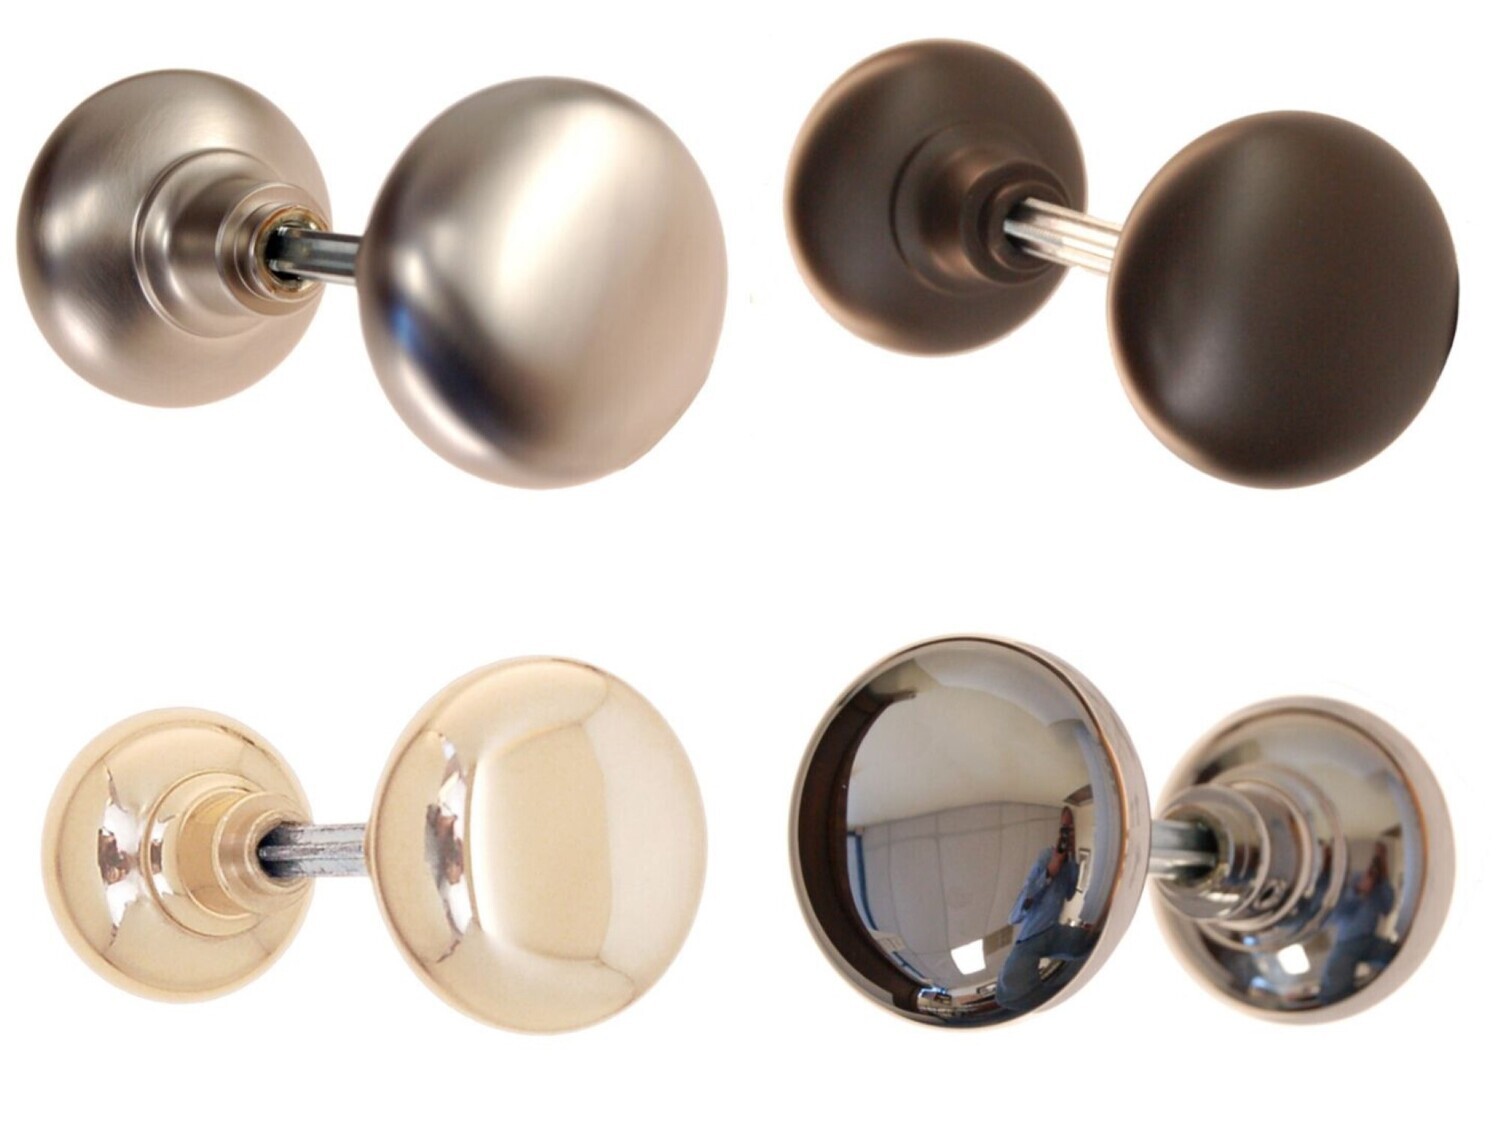 Pair Of Solid Core Heavy Duty Brass Doorknob. 2-1/4